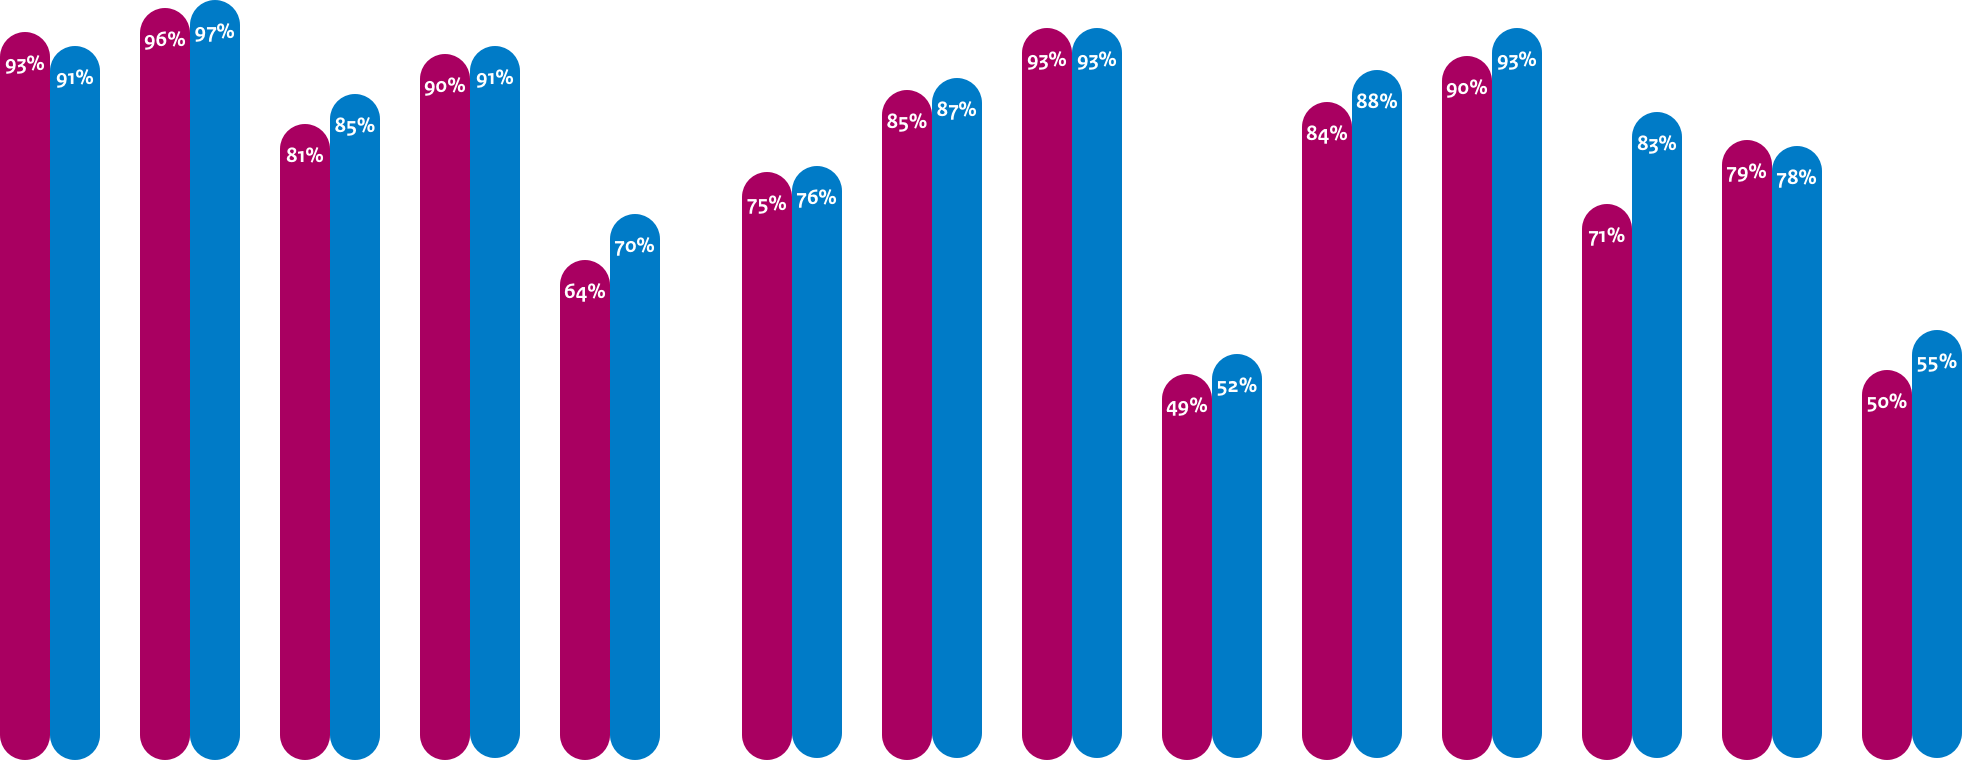 Gemiddelde adoptie webstandaarden Uitvoerders
DNSSEC: 93%, 91%
TLS: 96%, 97%
TLS NCSC: 81%, 85%
HTTPS: 90%, 91%
HSTS: 64%, 70%

Gemiddelde adoptie mailstandaarden Anti-phishing Uitvoerders
DMARC: 75%, 76%
DKIM: 85%, 87%
SPF: 93%, 93%
DMARC Policy: 49%, 52%
SPF Policy: 84%, 88%

Gemiddelde adoptie mailstandaarden Vertrouwelijkheid Uitvoerders
START TLS: 90%, 93%
START TLS NCSC: 71%, 83%
DNSSEC MX: 79%, 78%
DANE: 50%, 55%